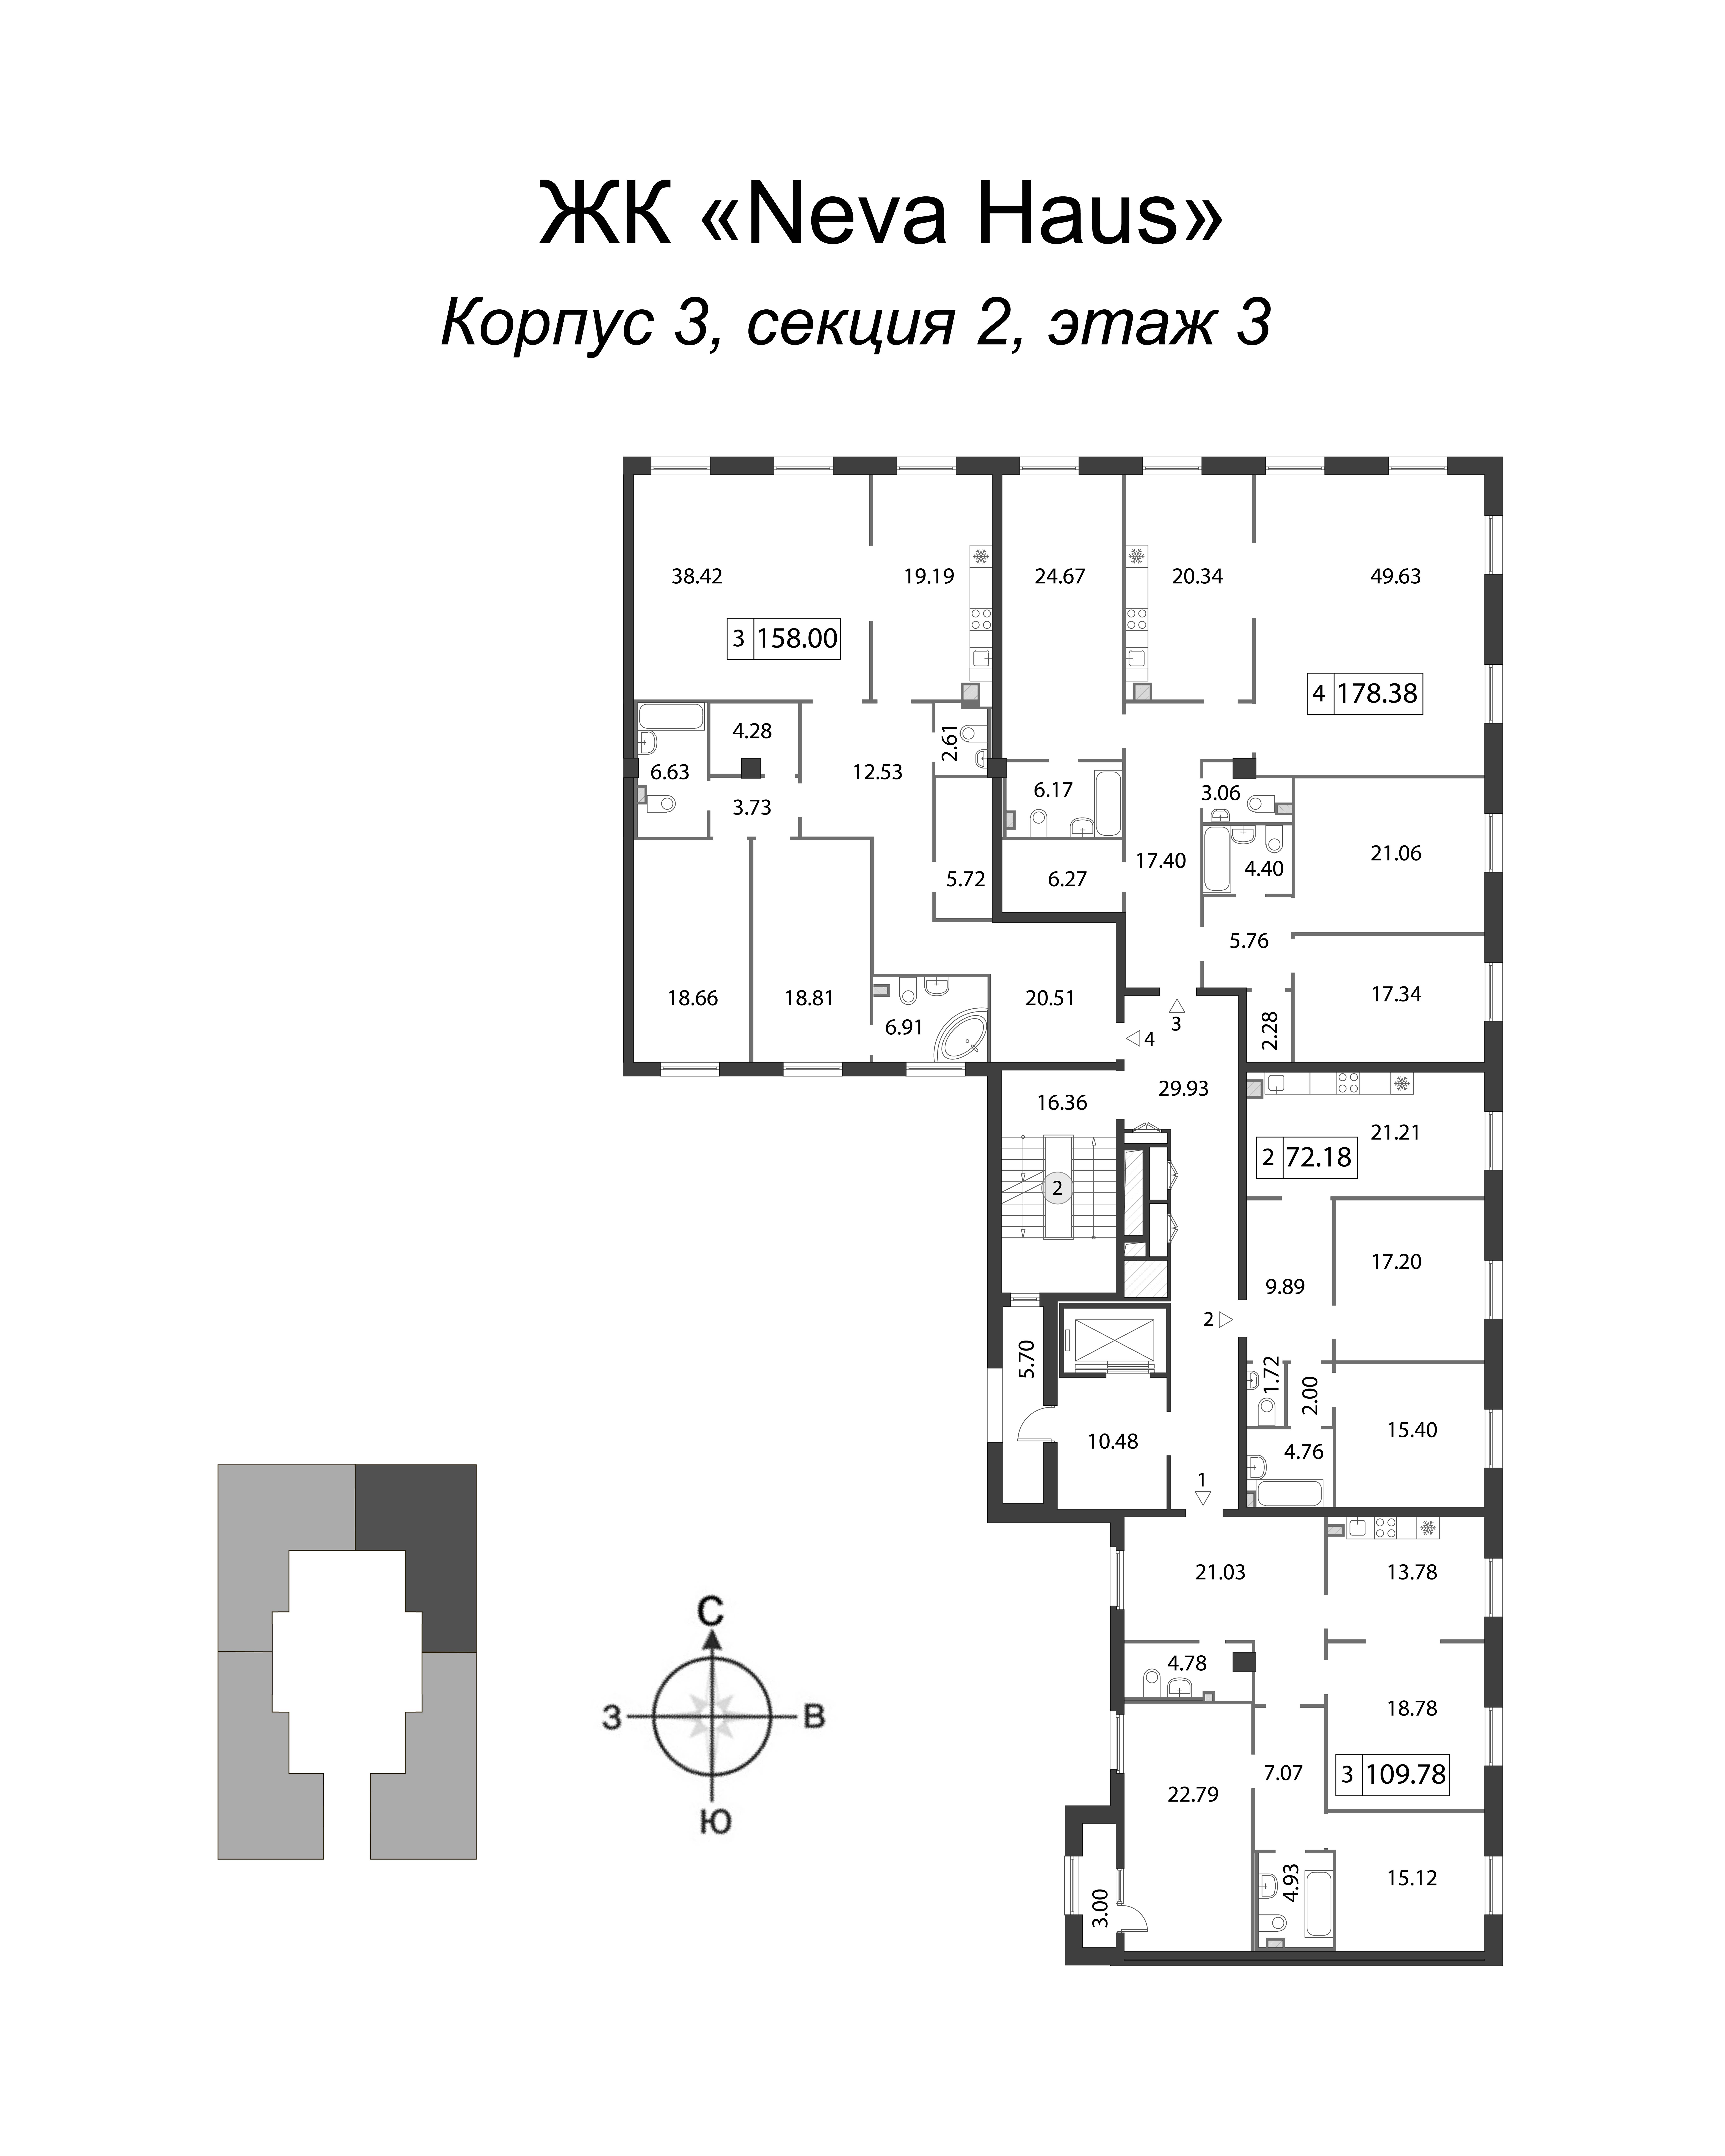 4-комнатная (Евро) квартира, 157.9 м² в ЖК "Neva Haus" - планировка этажа